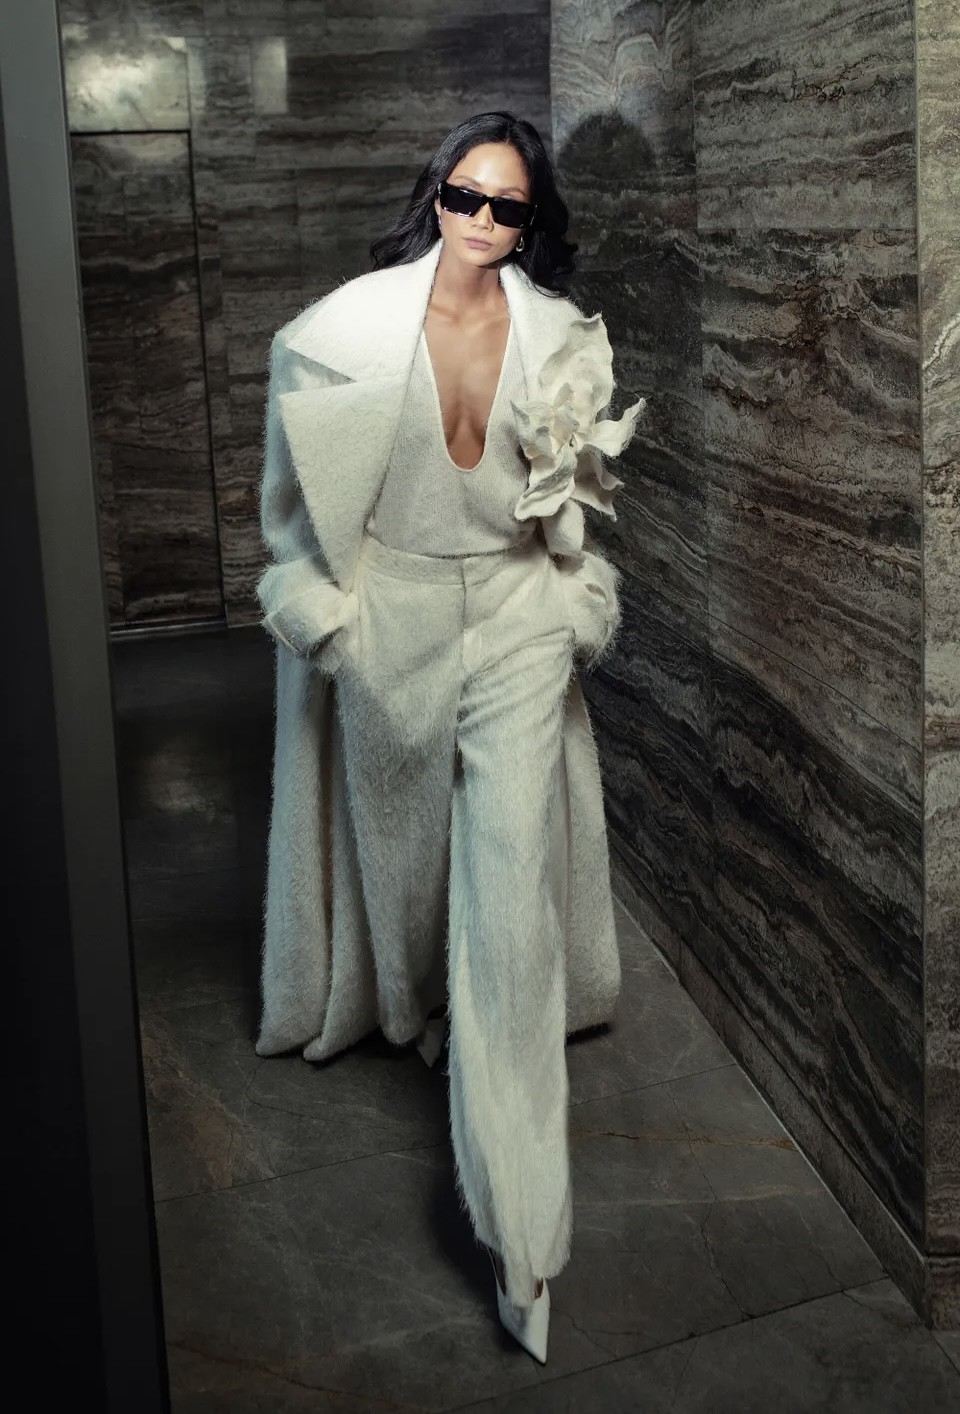 H’Hen Niê lại &#34;chễm chệ&#34; trên Vogue danh giá , thần thái Hoa hậu đẹp nhất thế giới vẫn vững phong độ - 4